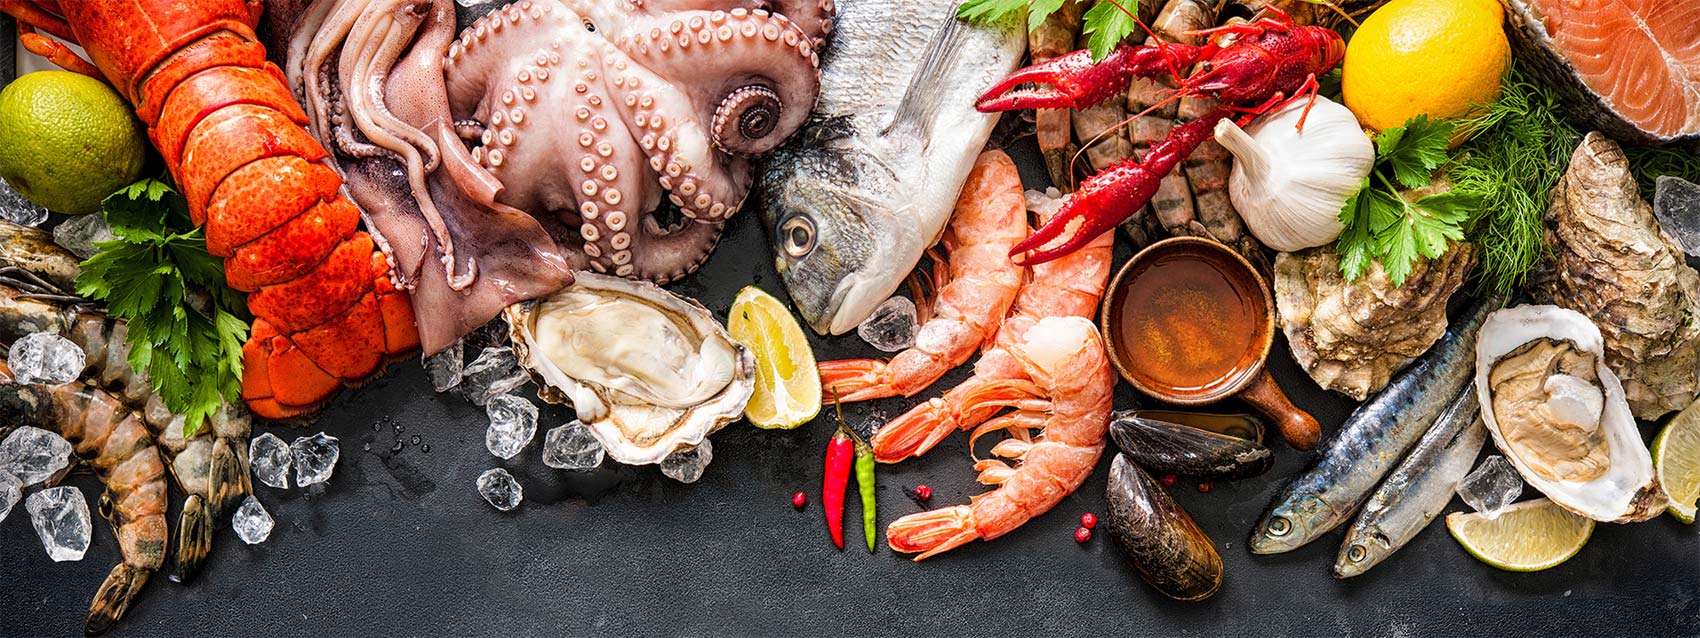 10 удивительных фактов о морепродуктах